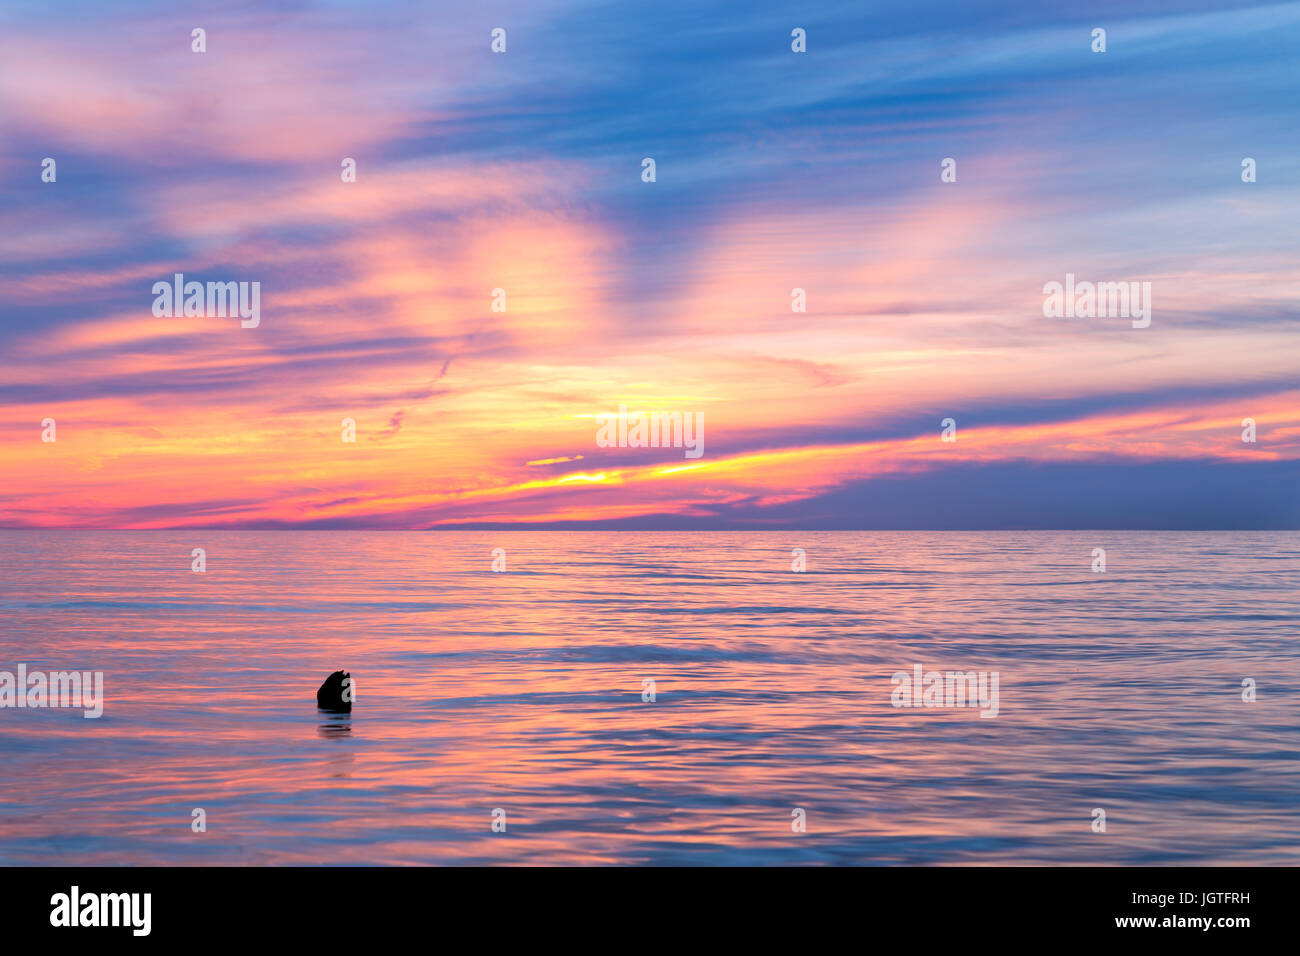 Le lac Michigan - Coucher de soleil lever de l'horizon et couleurs vives reflètent sur la surface du lac Michigan pendant le coucher du soleil Banque D'Images